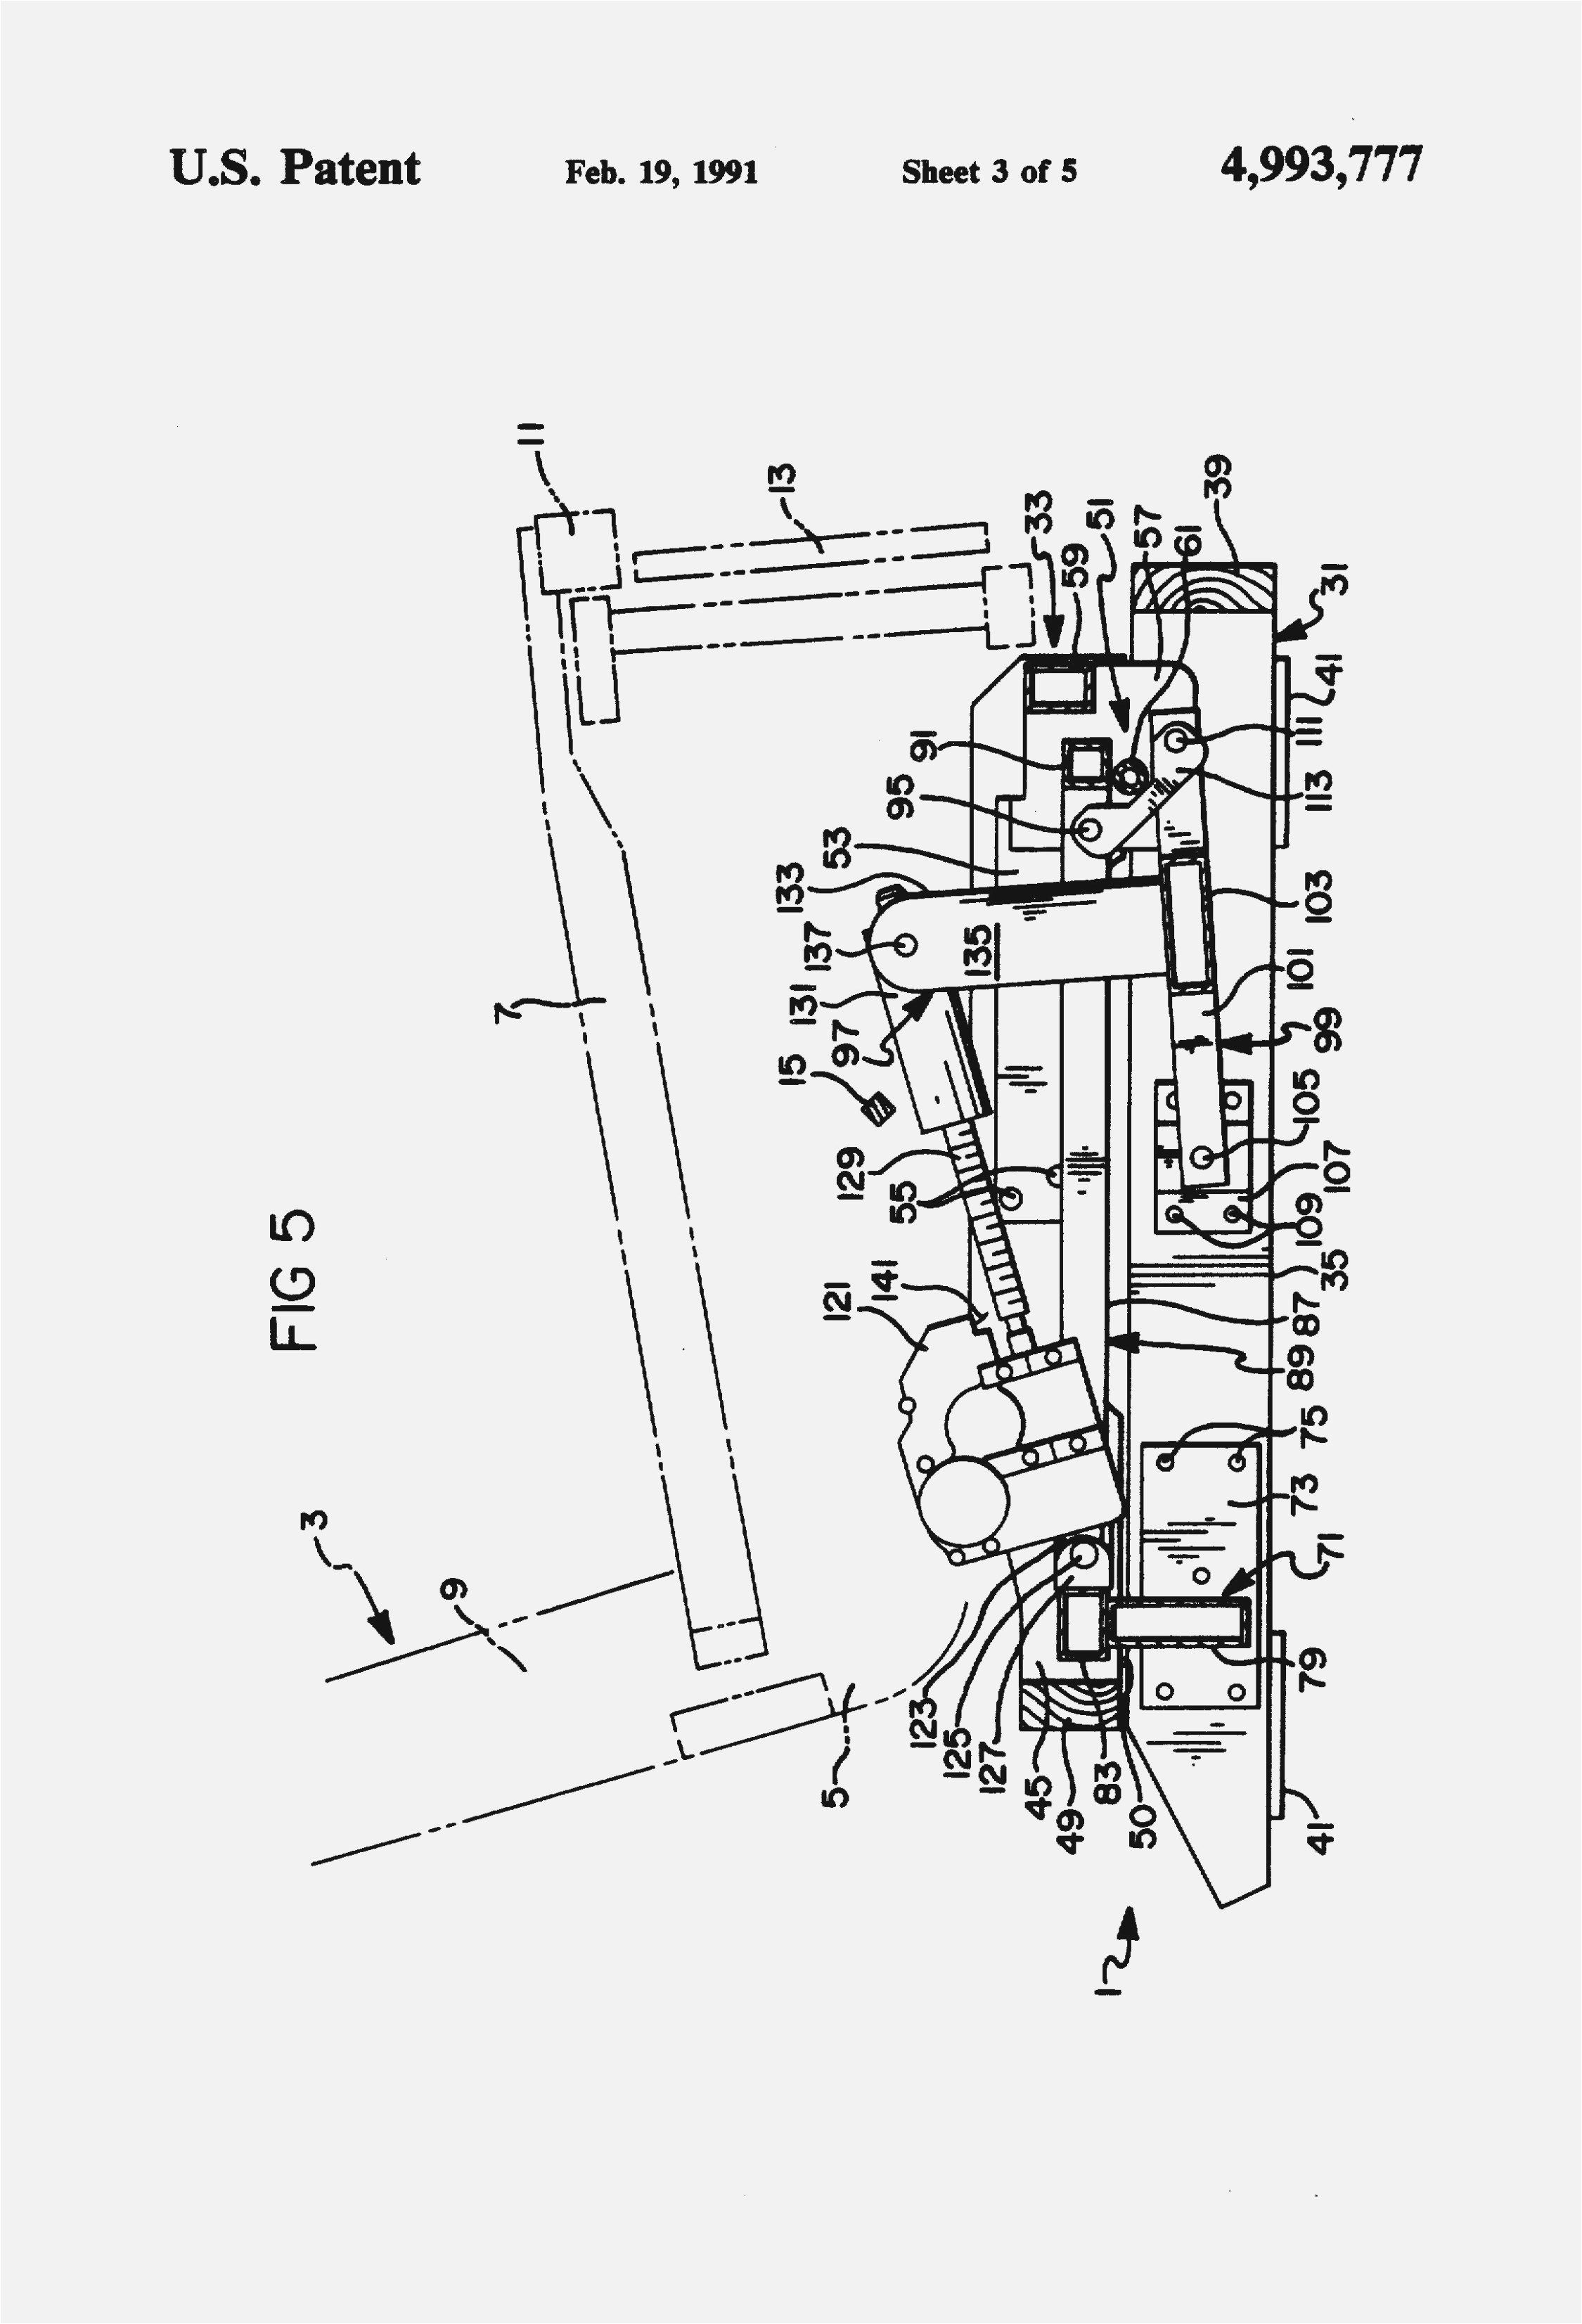 bruno wheelchair lift wiring diagram